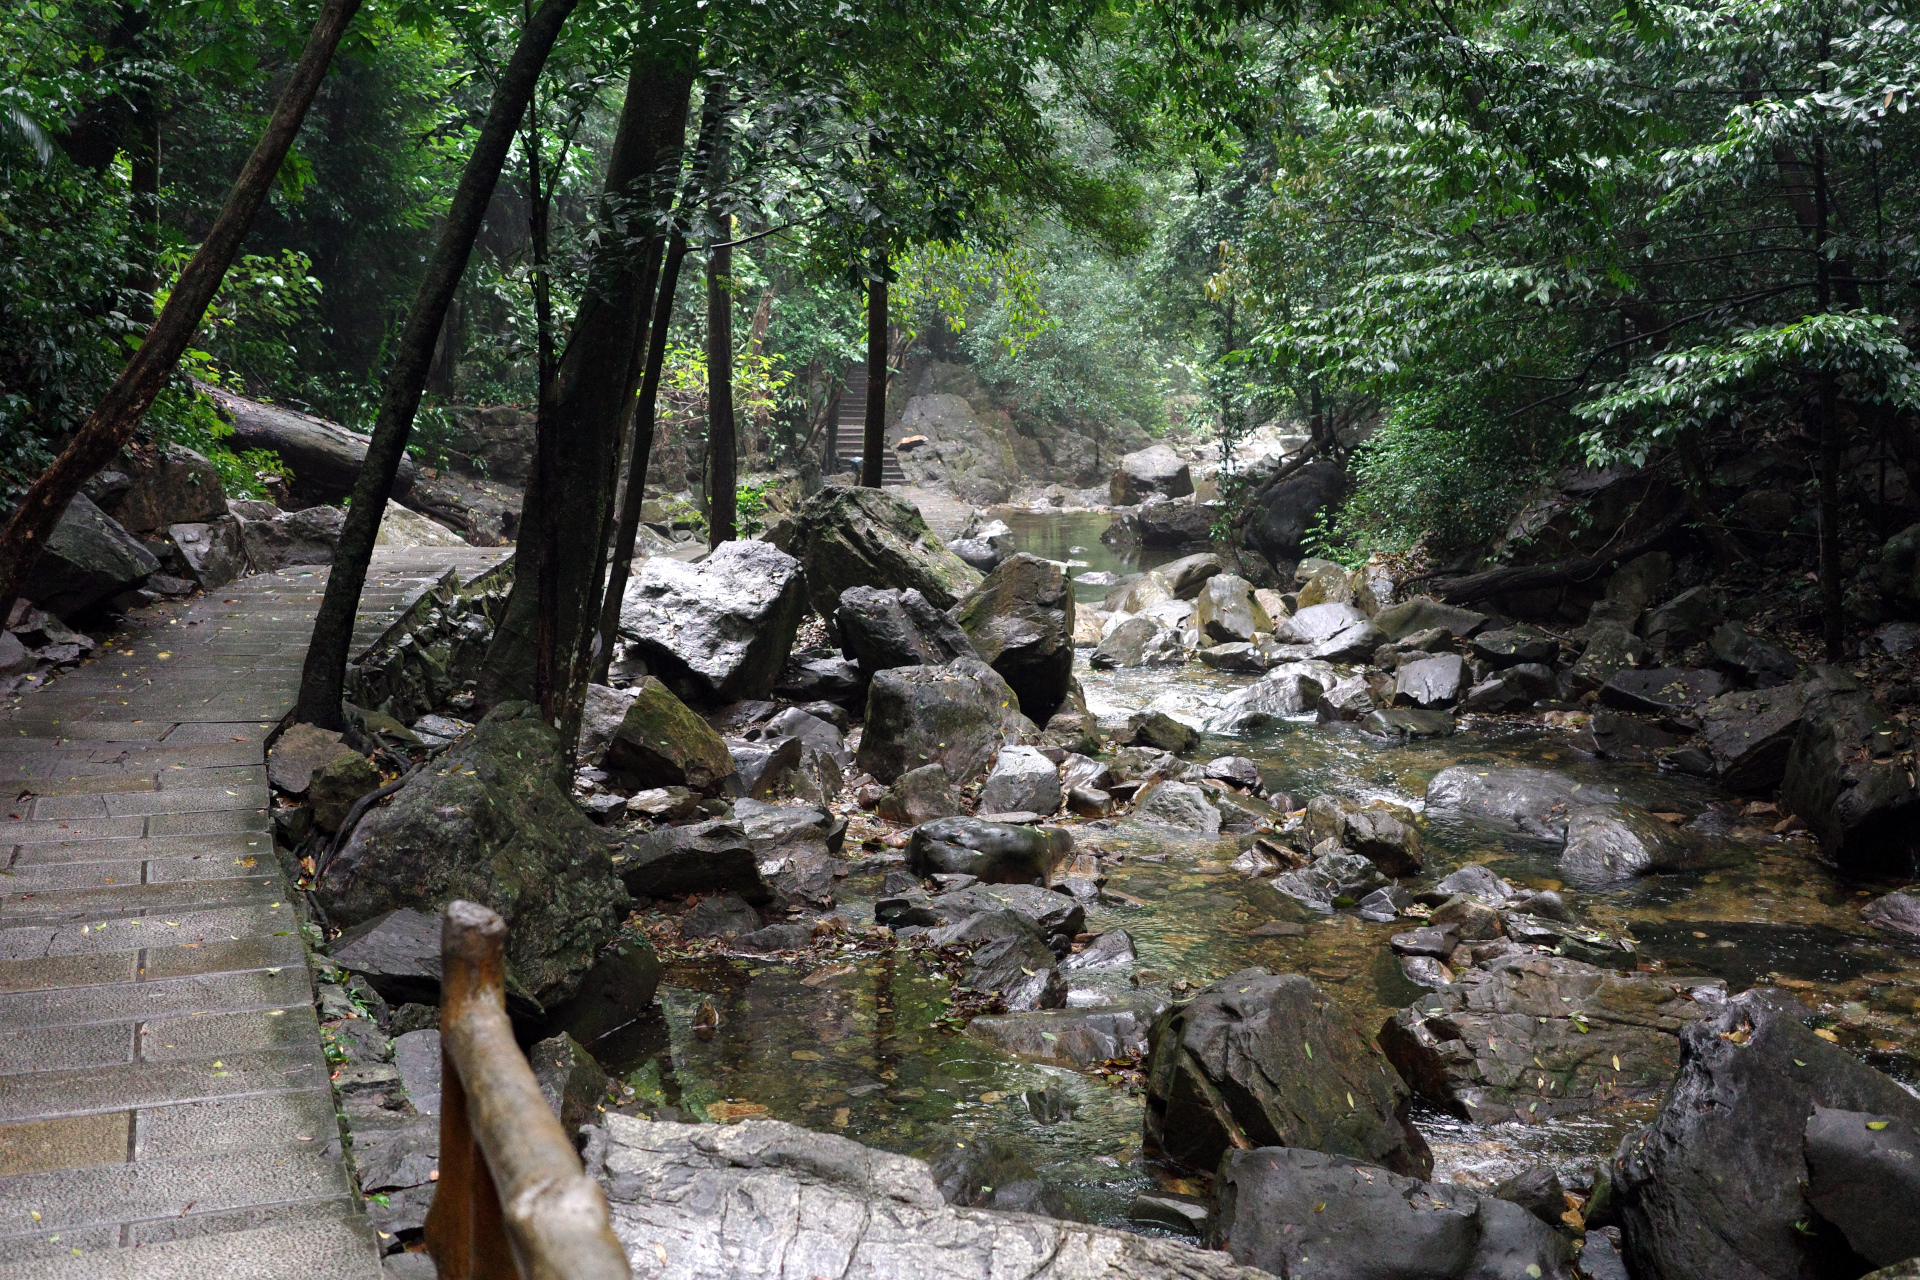 A creek seen while descending the mountain